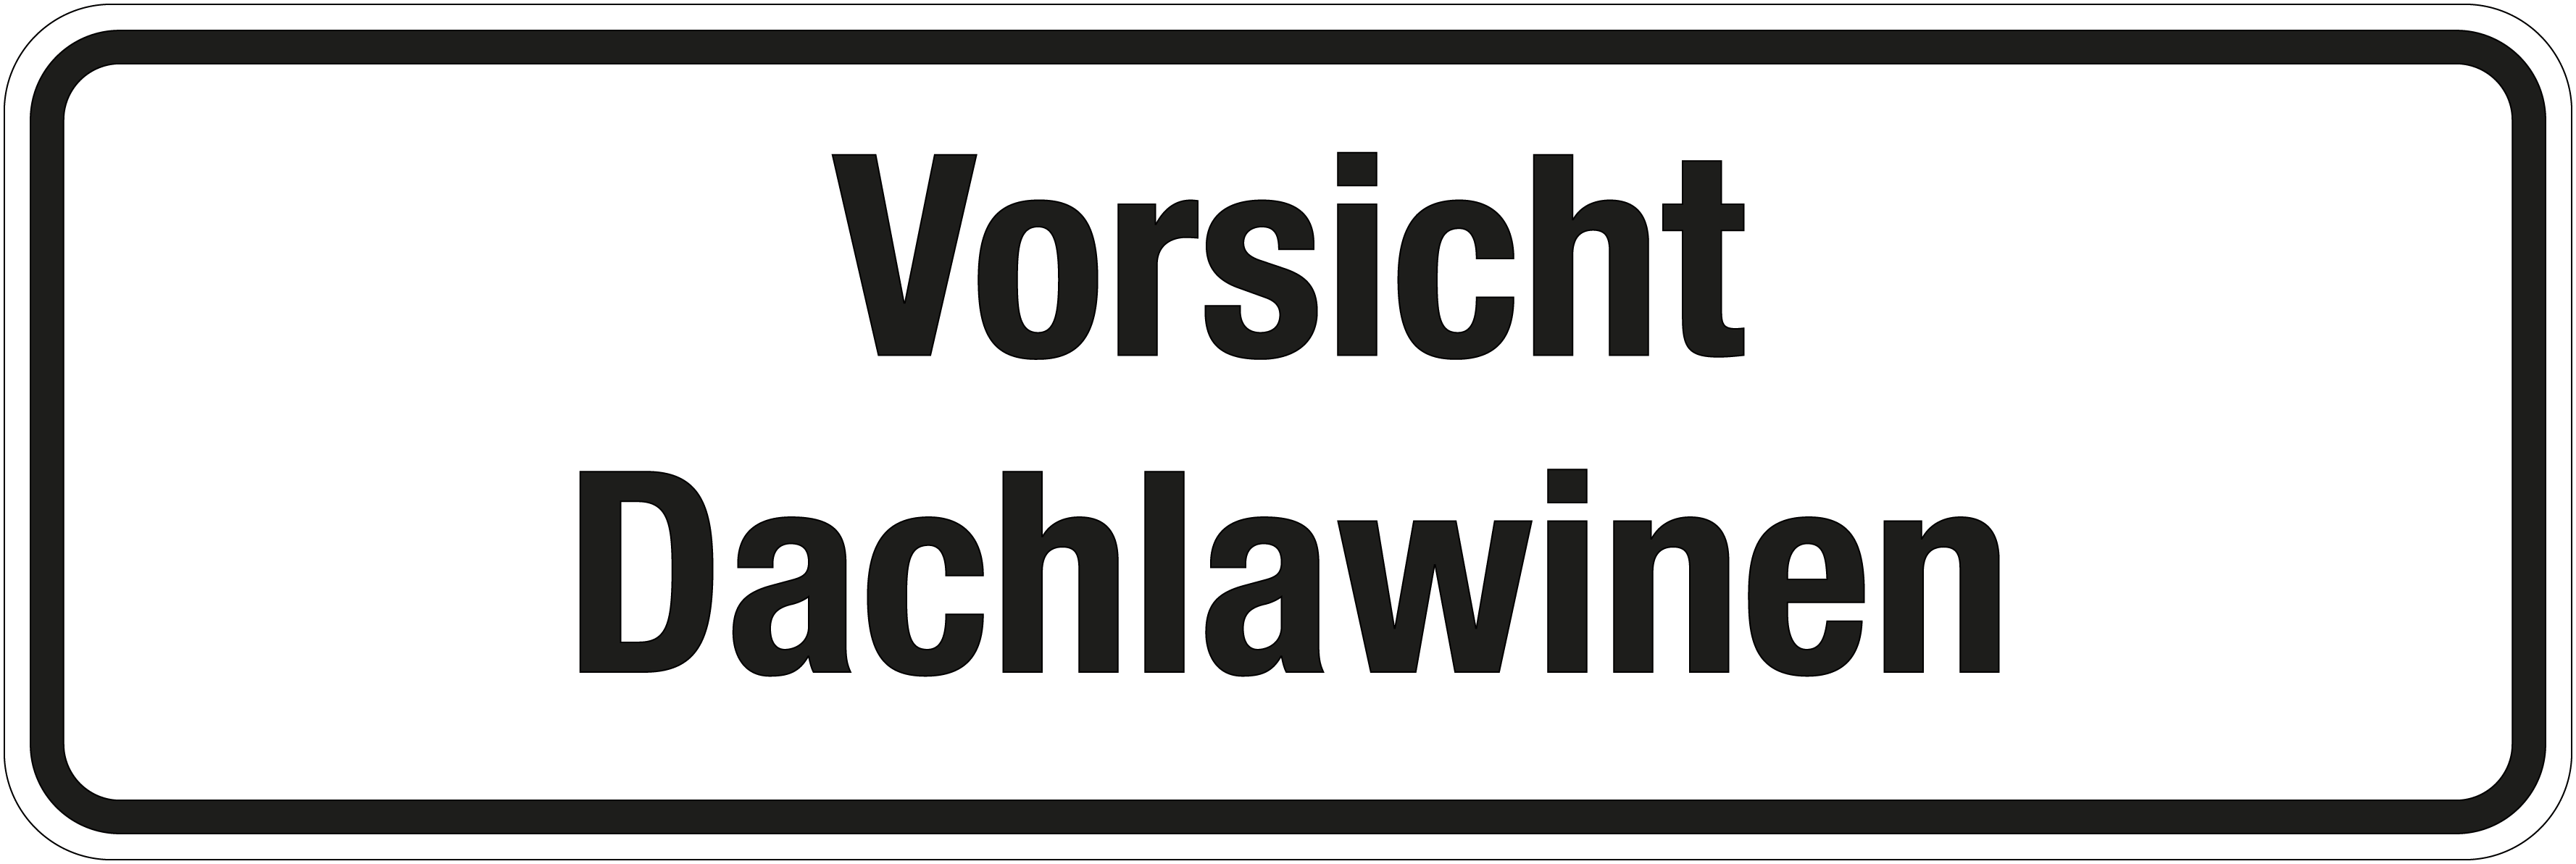 Winterschild - Vorsicht Dachlawinen - Folie Selbstklebend - 10 x 30 cm